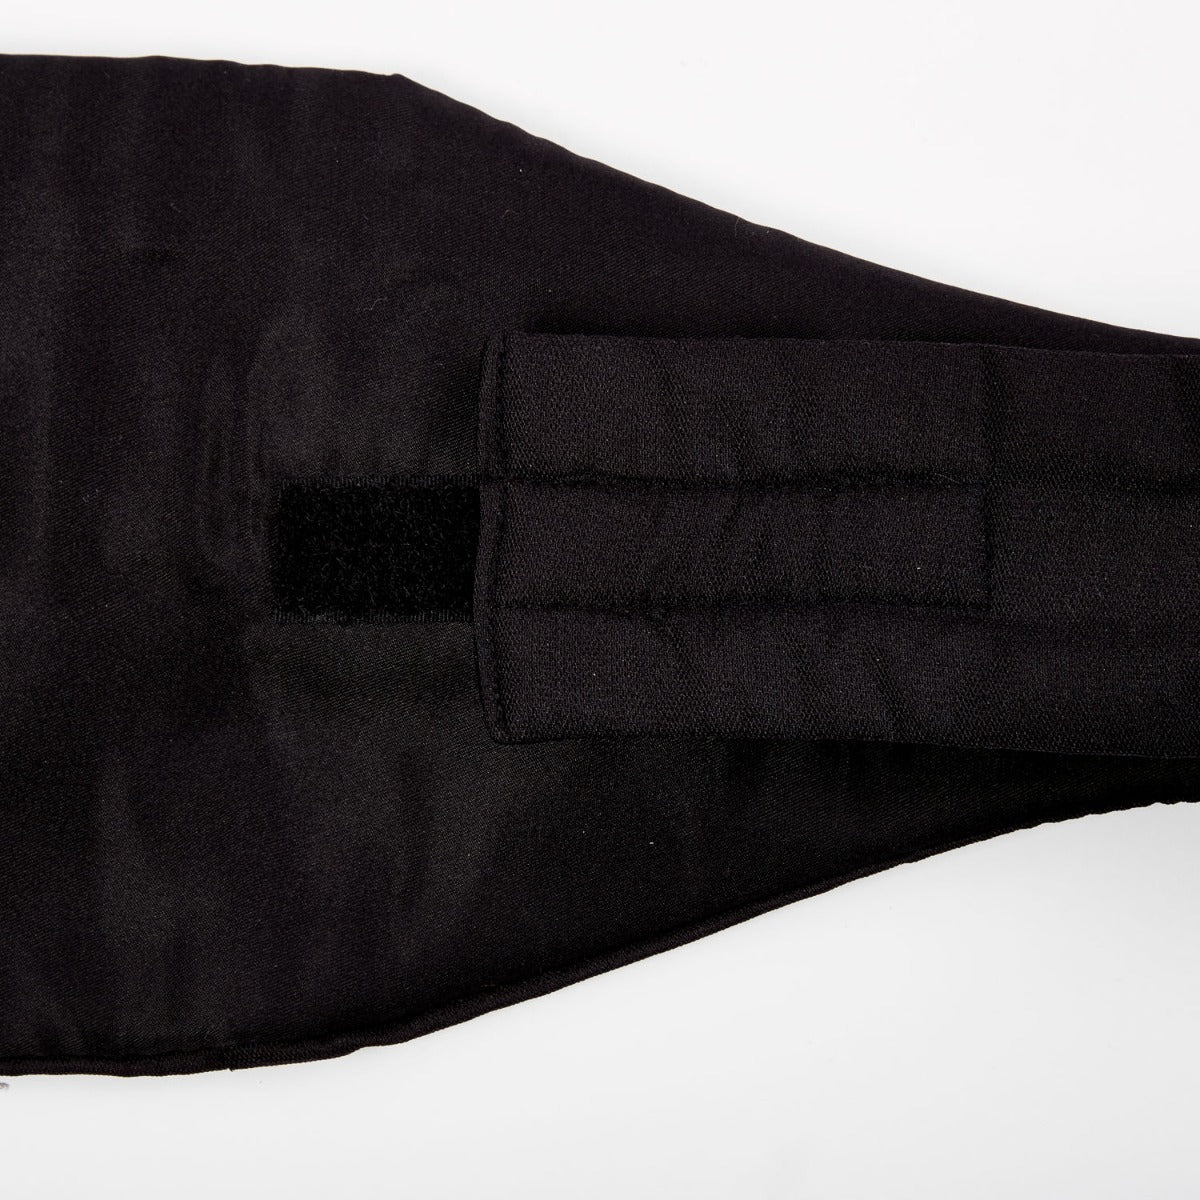 A black Sovereign Grade Black Barathea Cummerbund with a zipper, perfect for formalwear accessory from KirbyAllison.com.